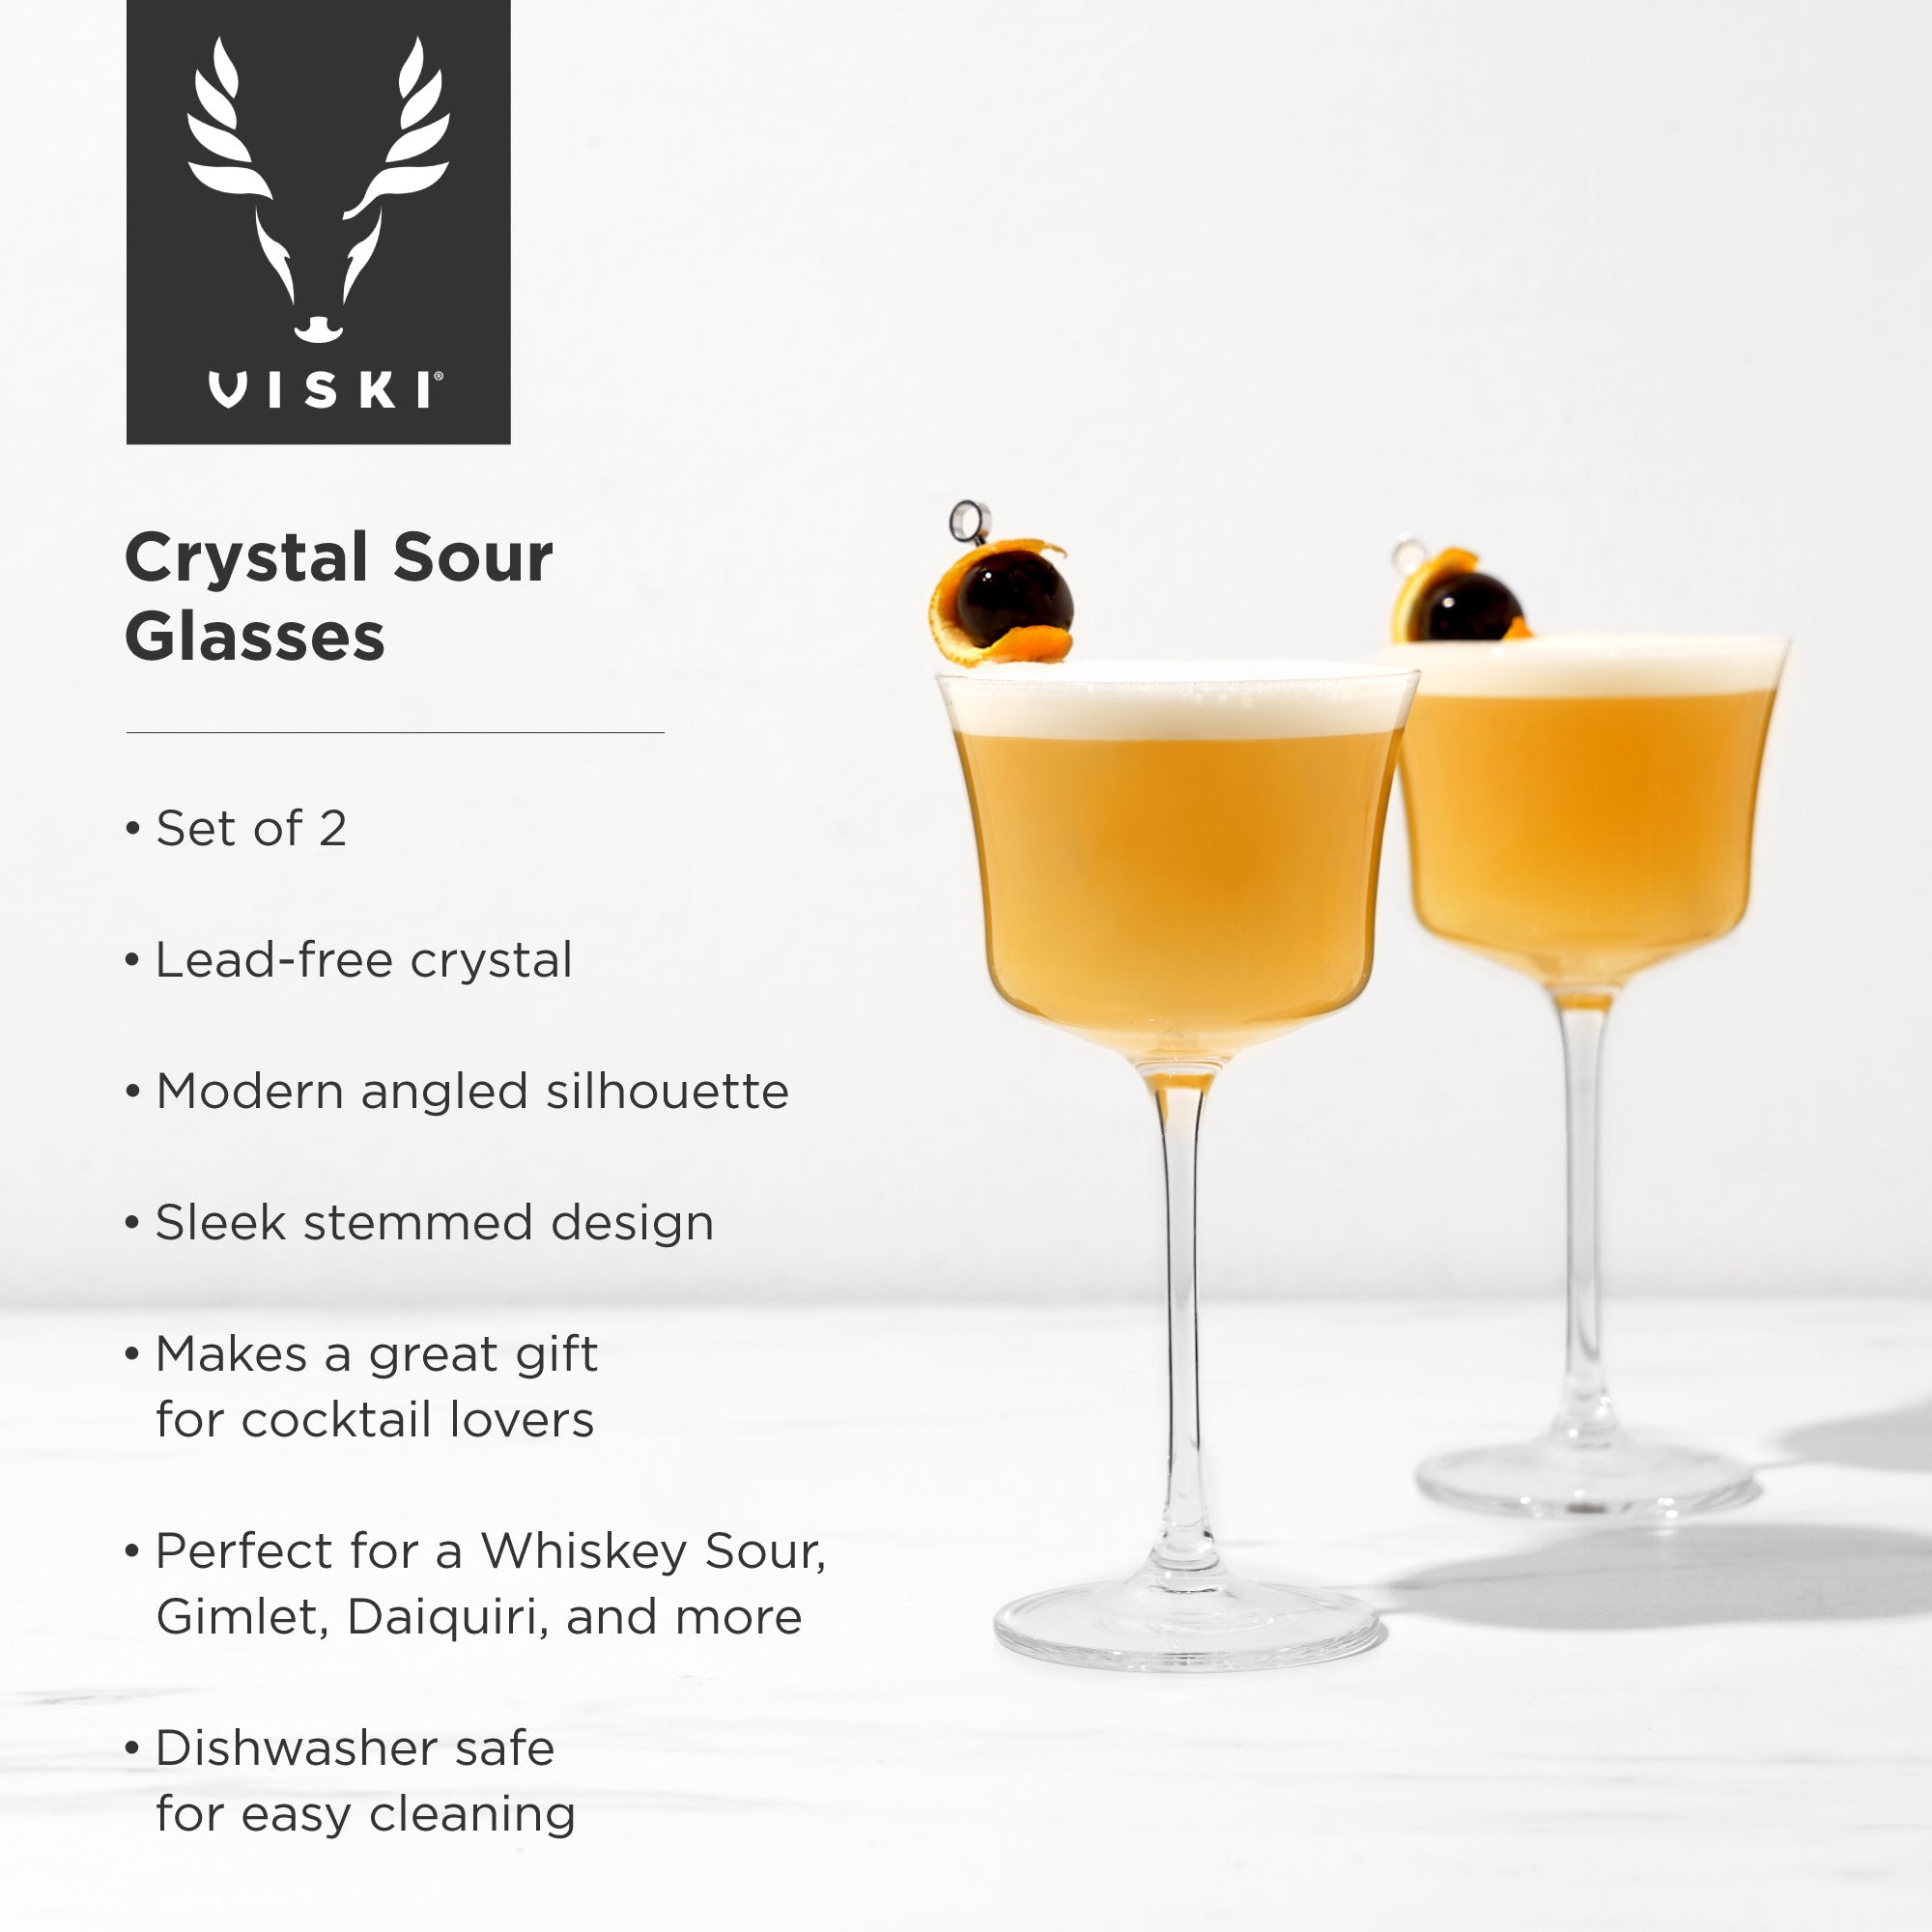 Crystal Sour Glasses by Viski